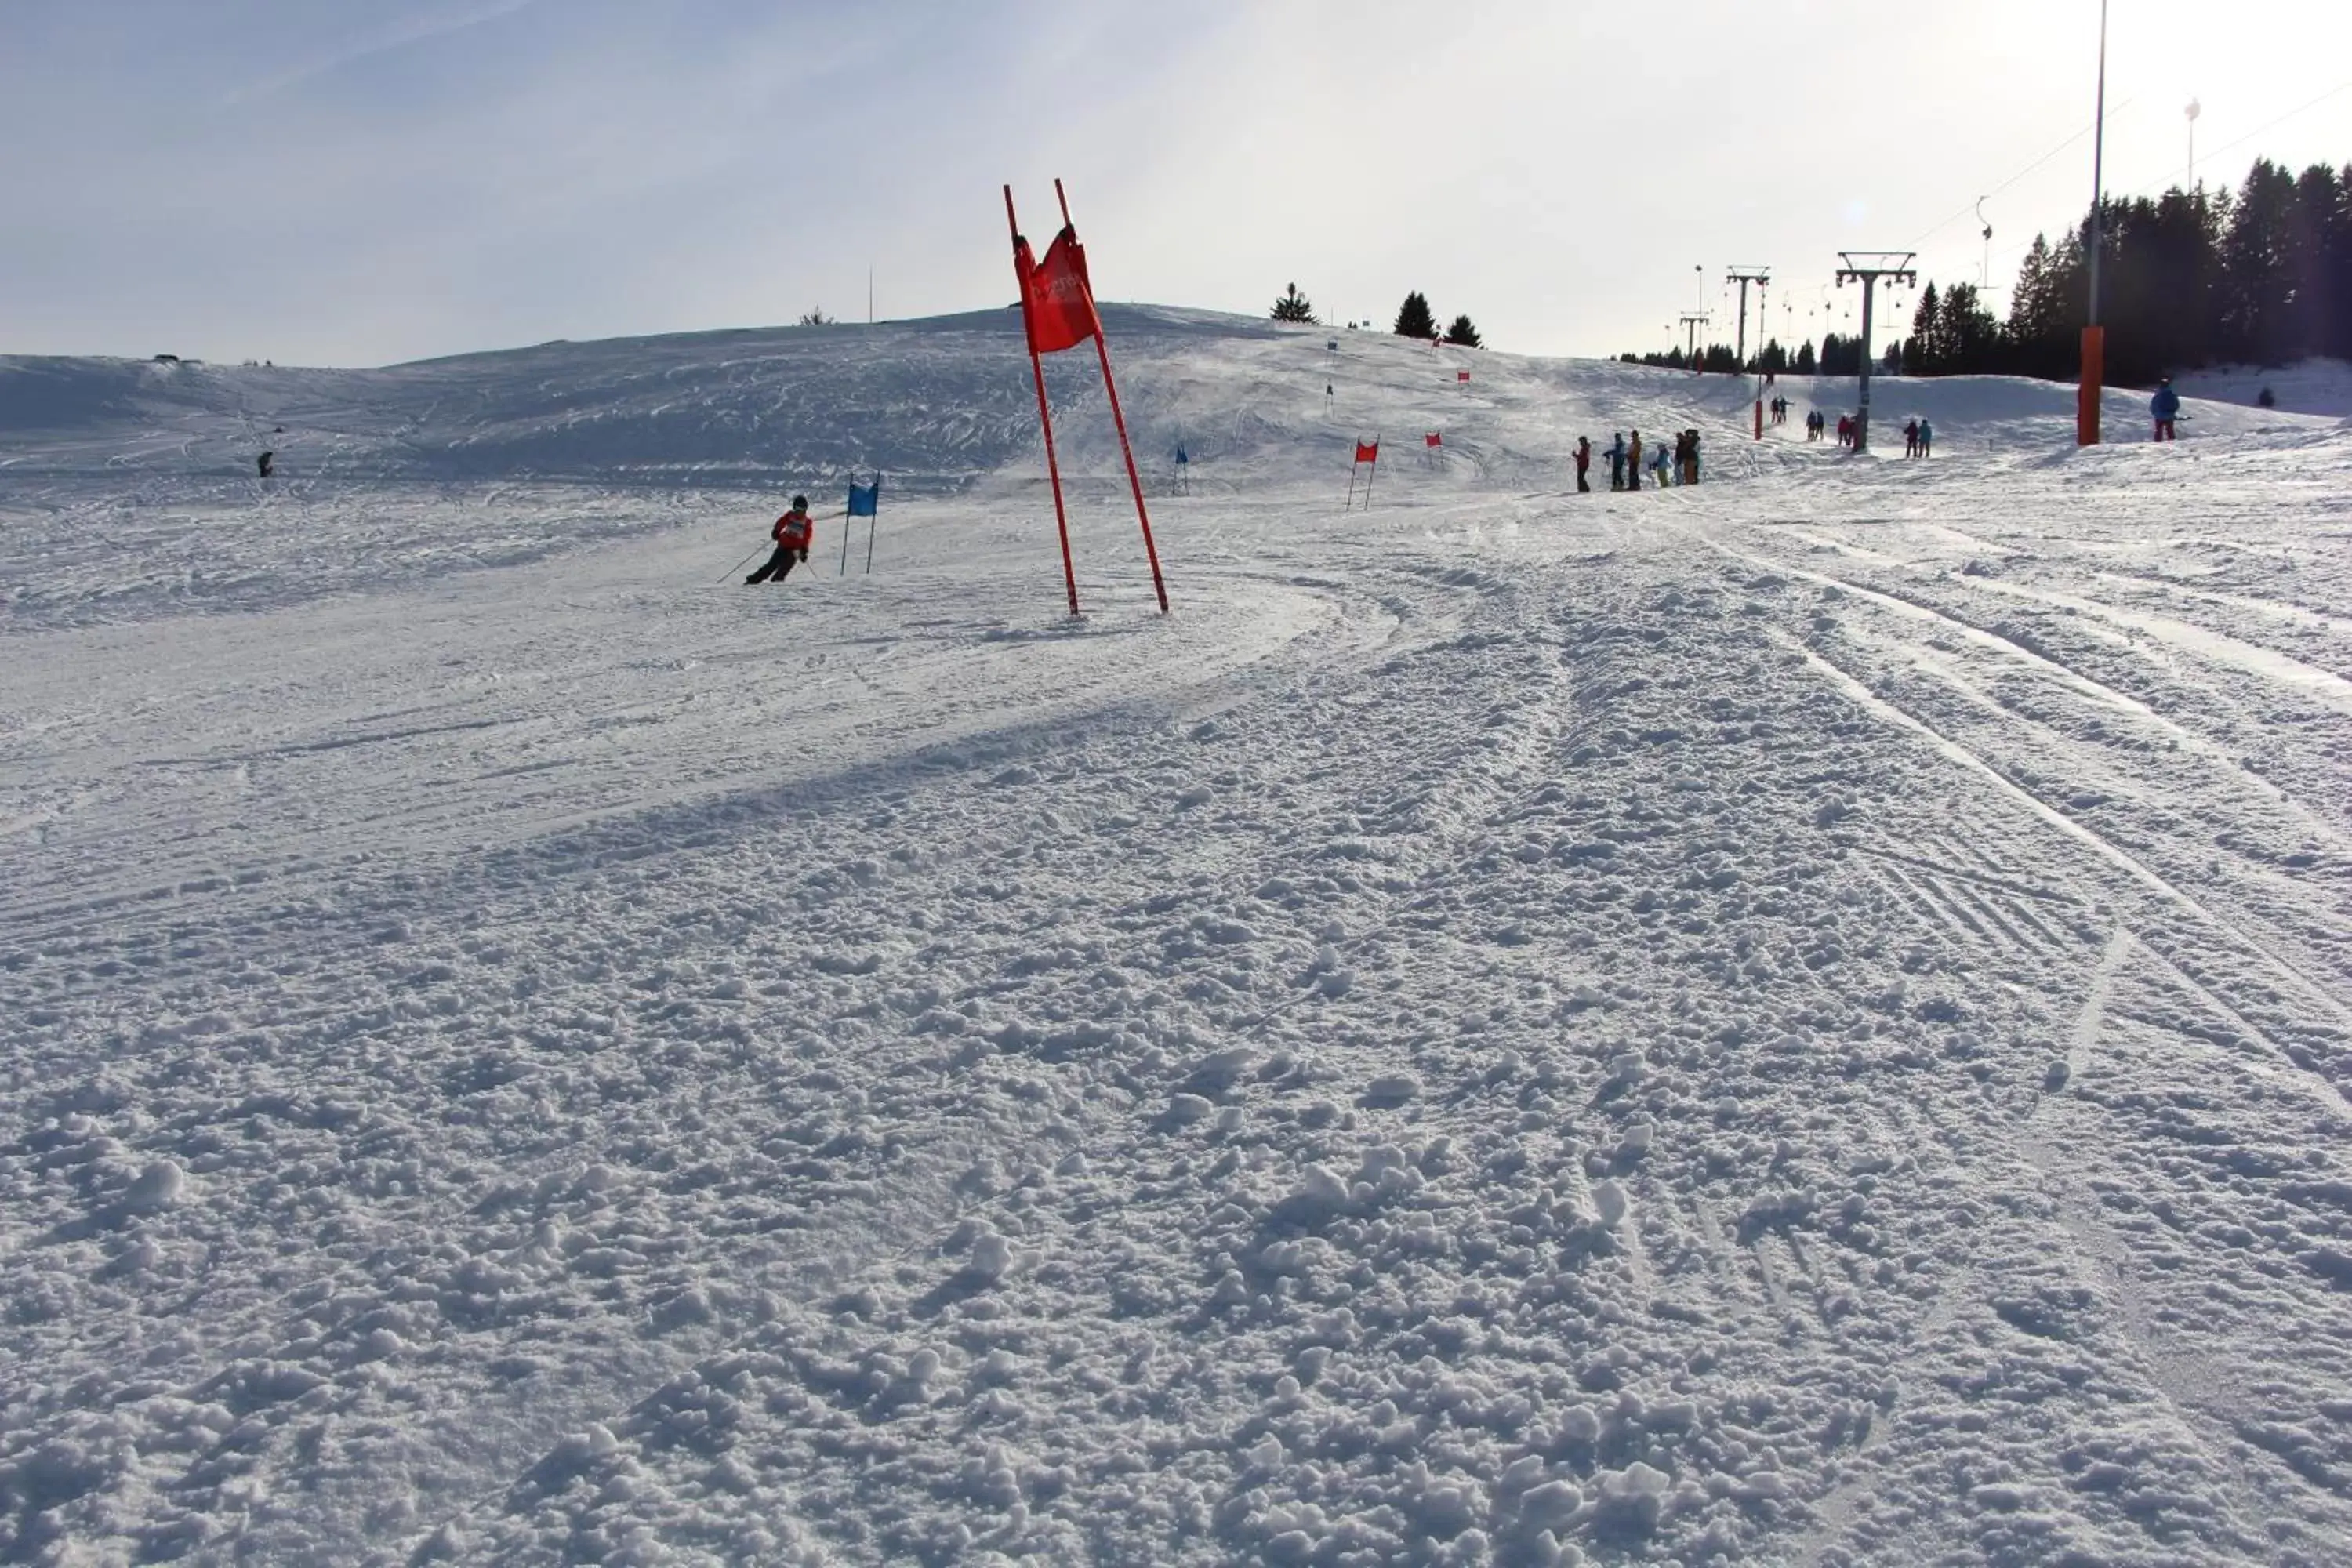 Winter, Skiing in Hotel Schiffahrt